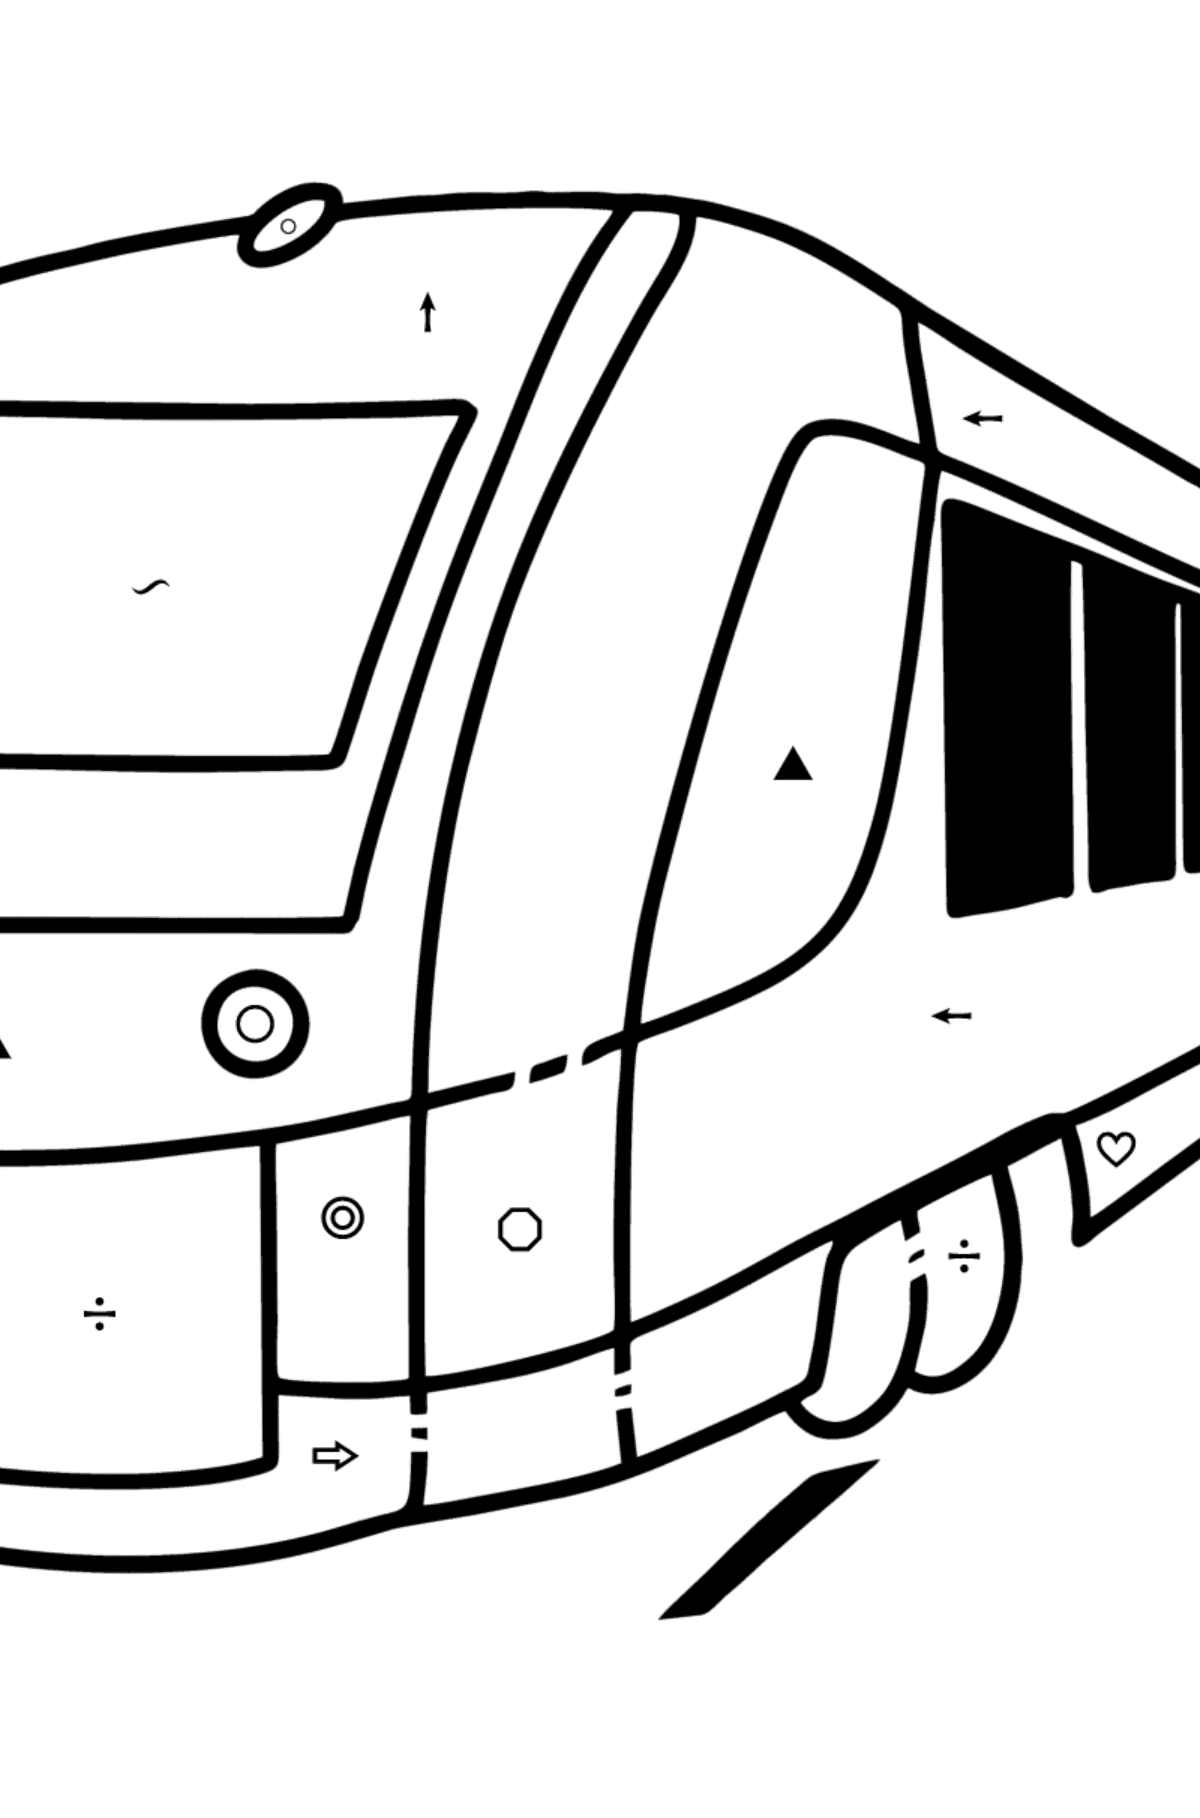 Tegning til fargelegging elektrisk tog - Fargelegge etter symboler og geometriske former for barn